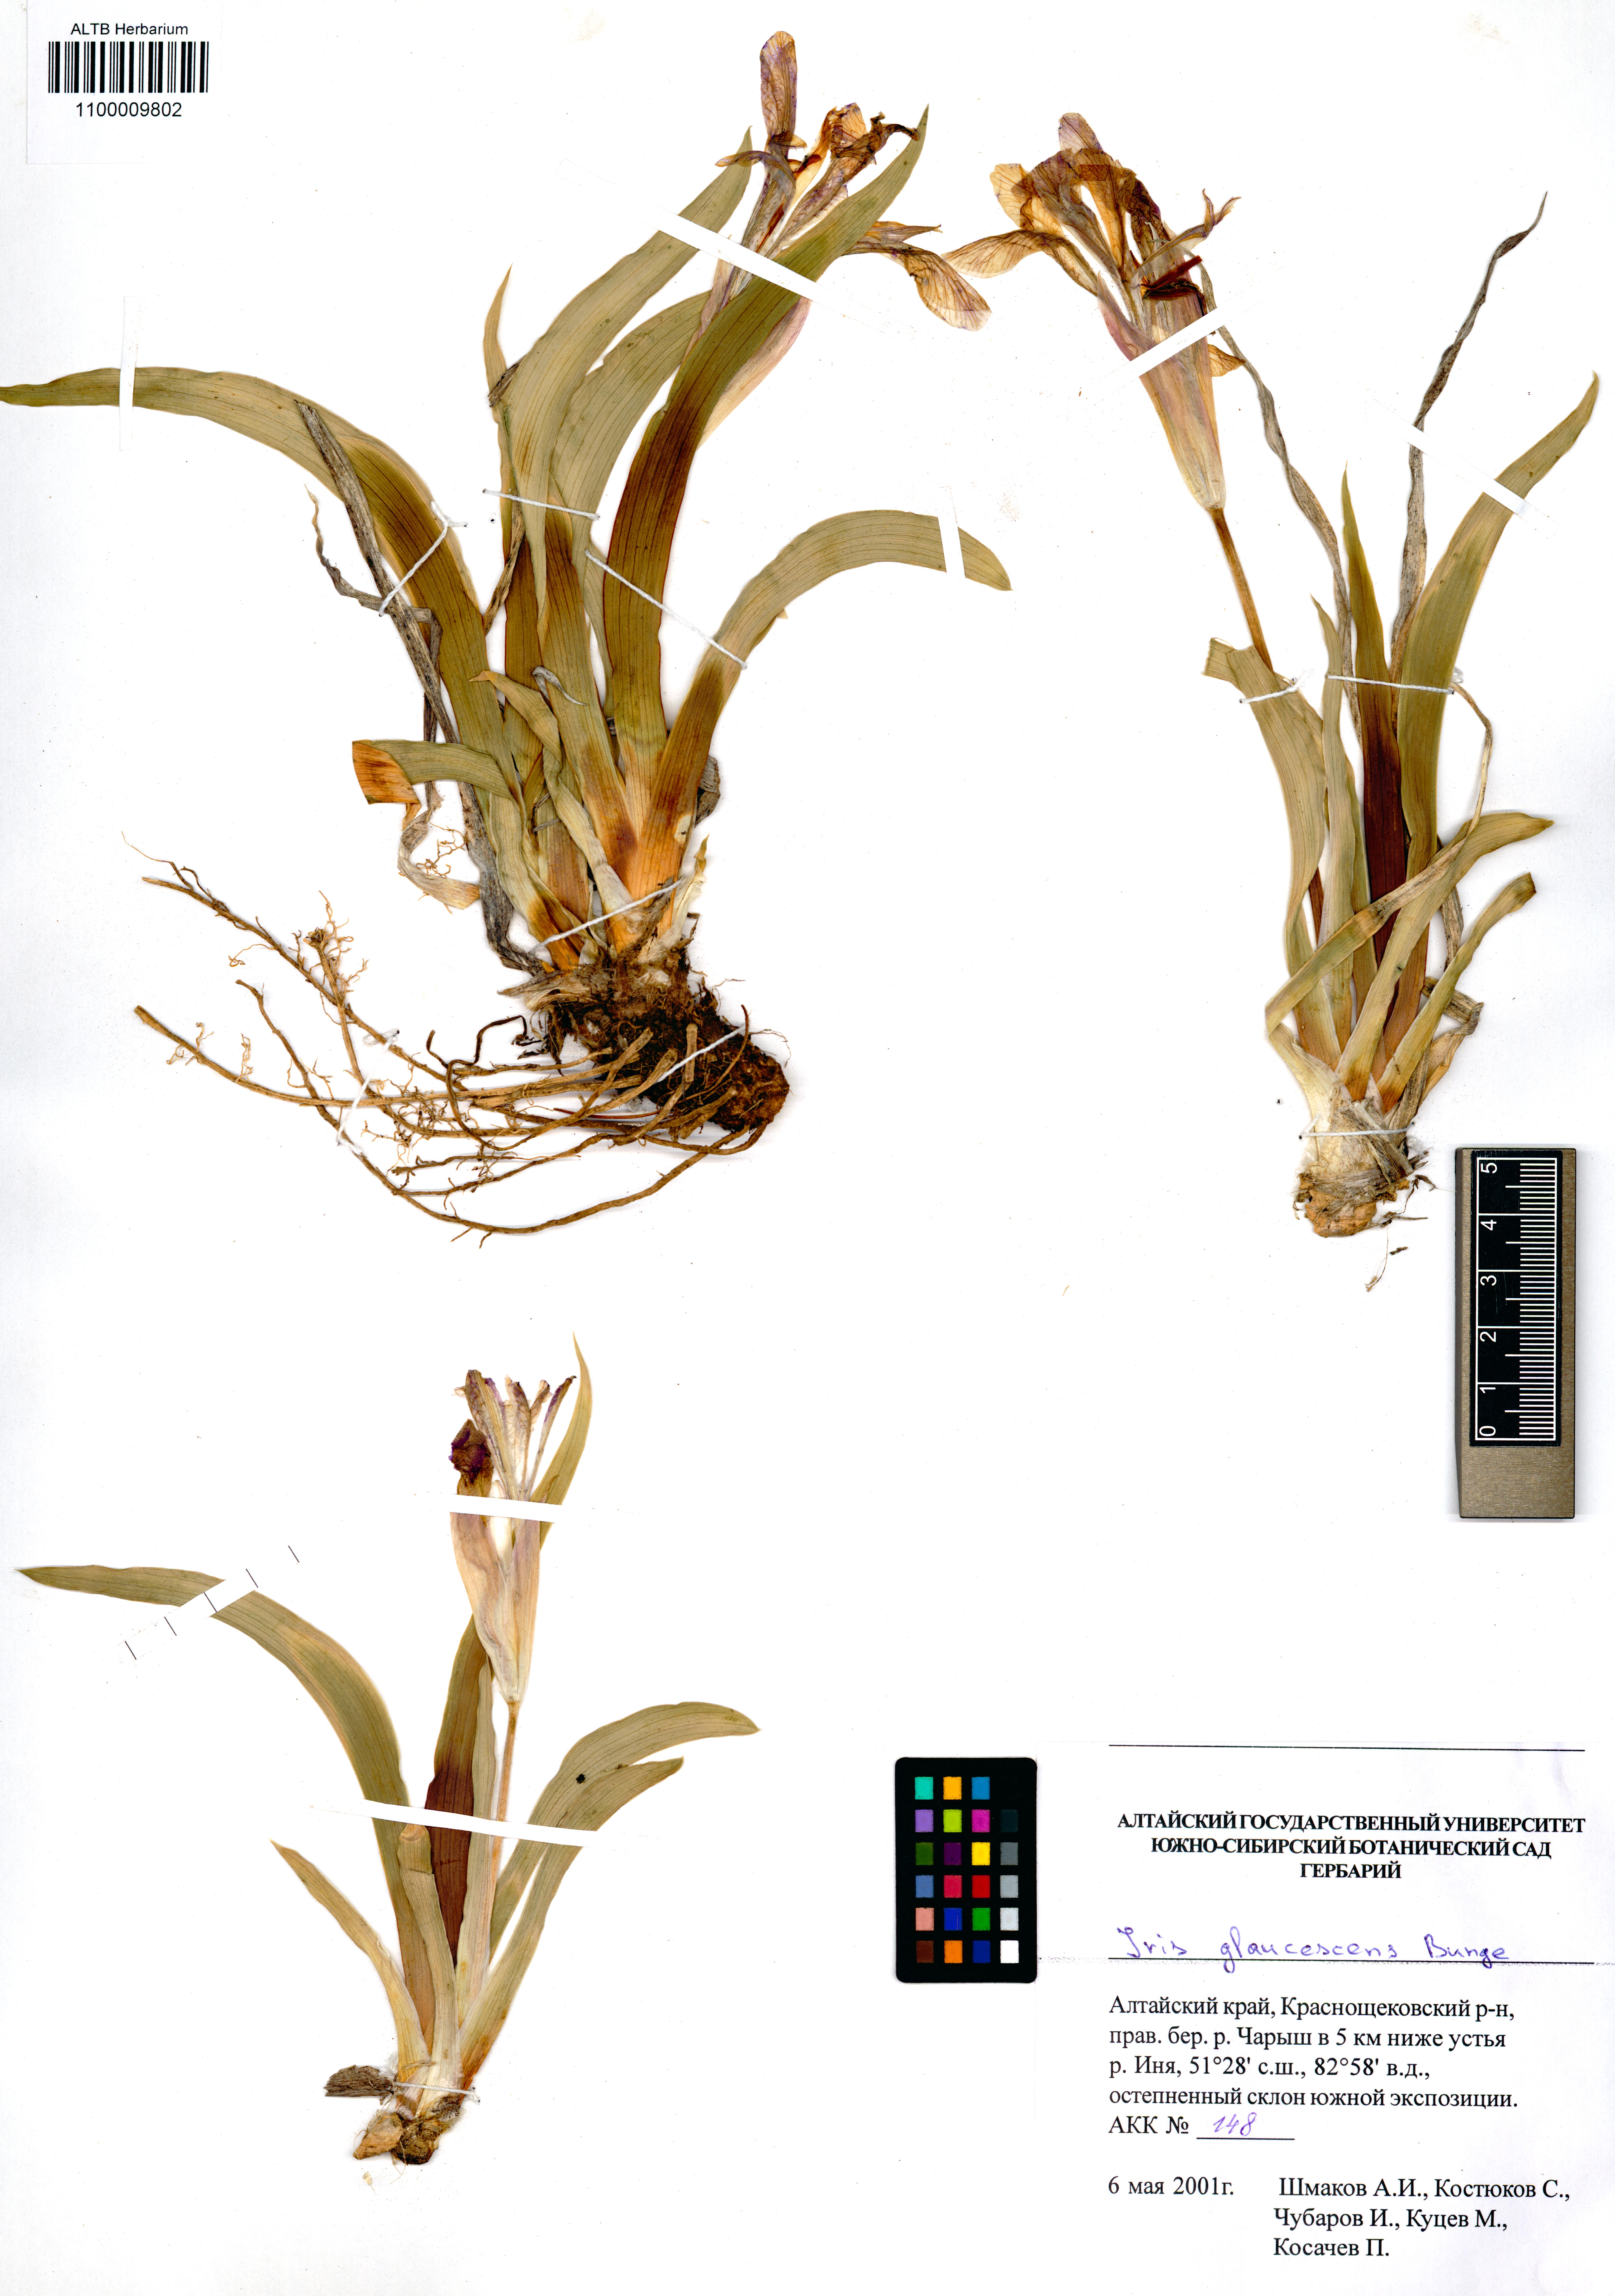 Iris glaucescens Bunge